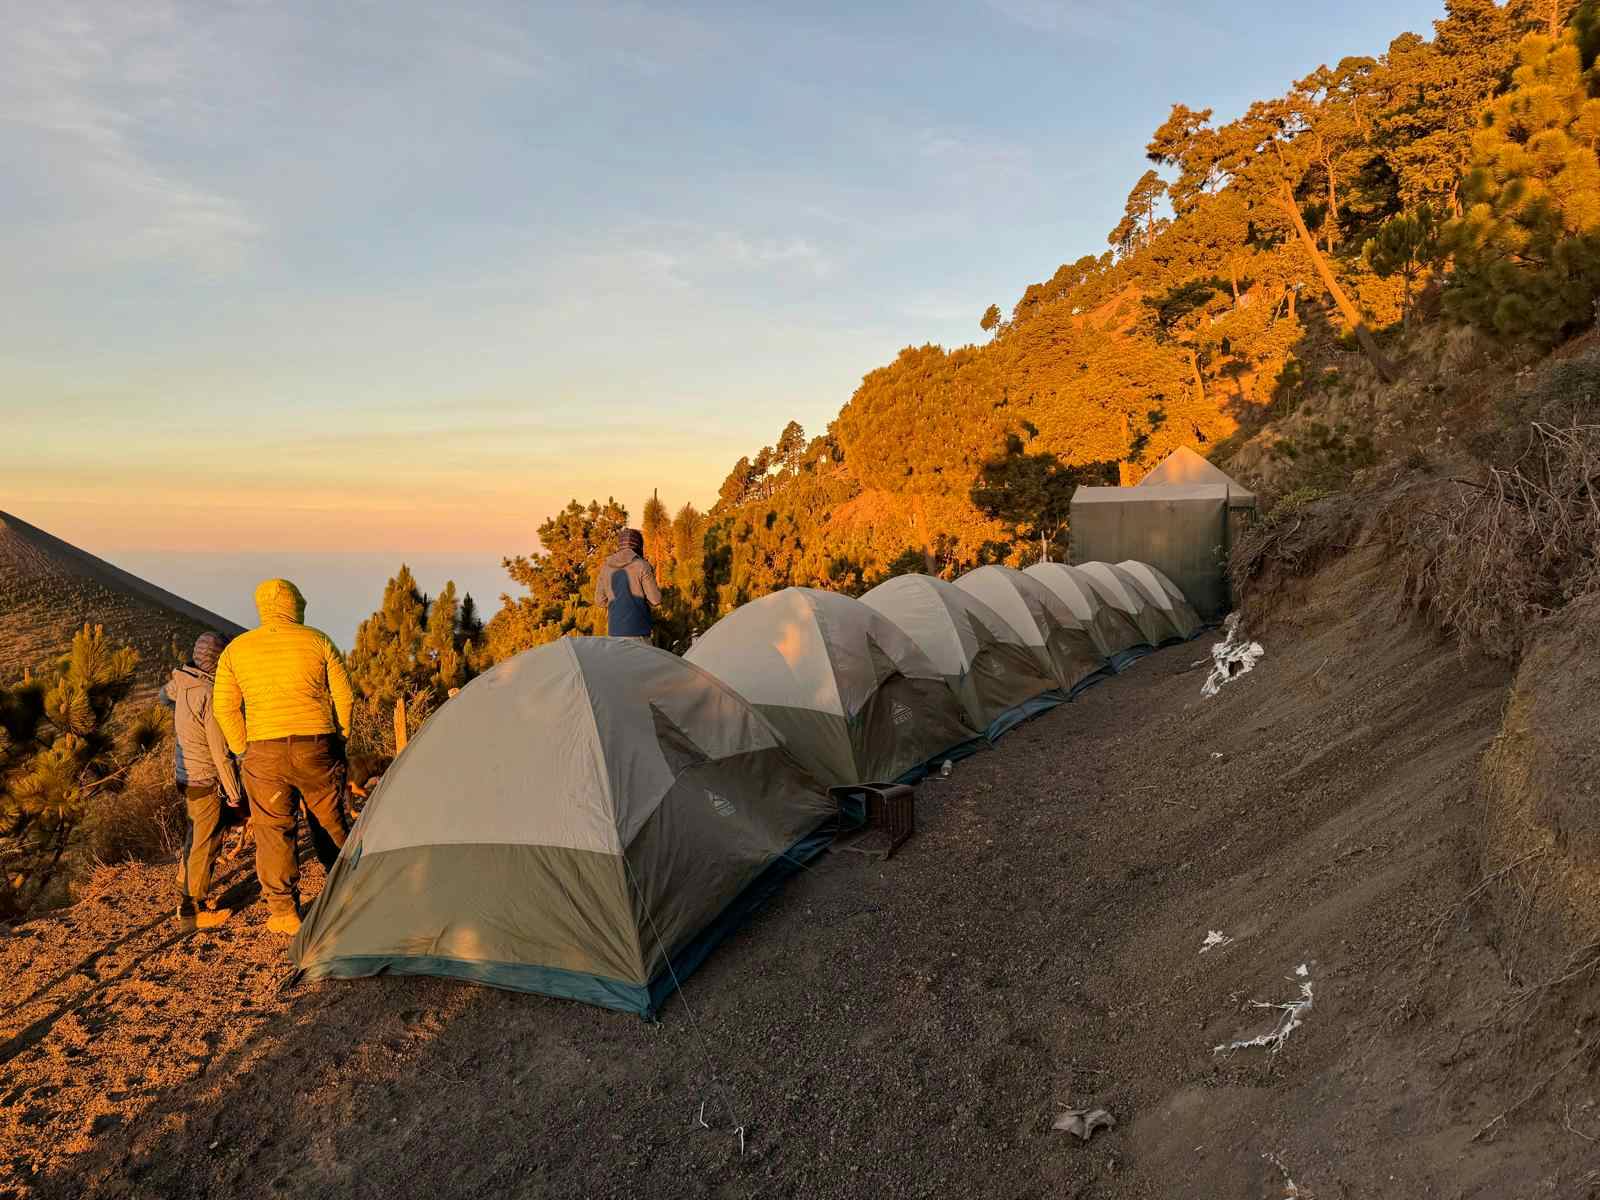 Basecamp at Acatenango volcano, Guatemala.